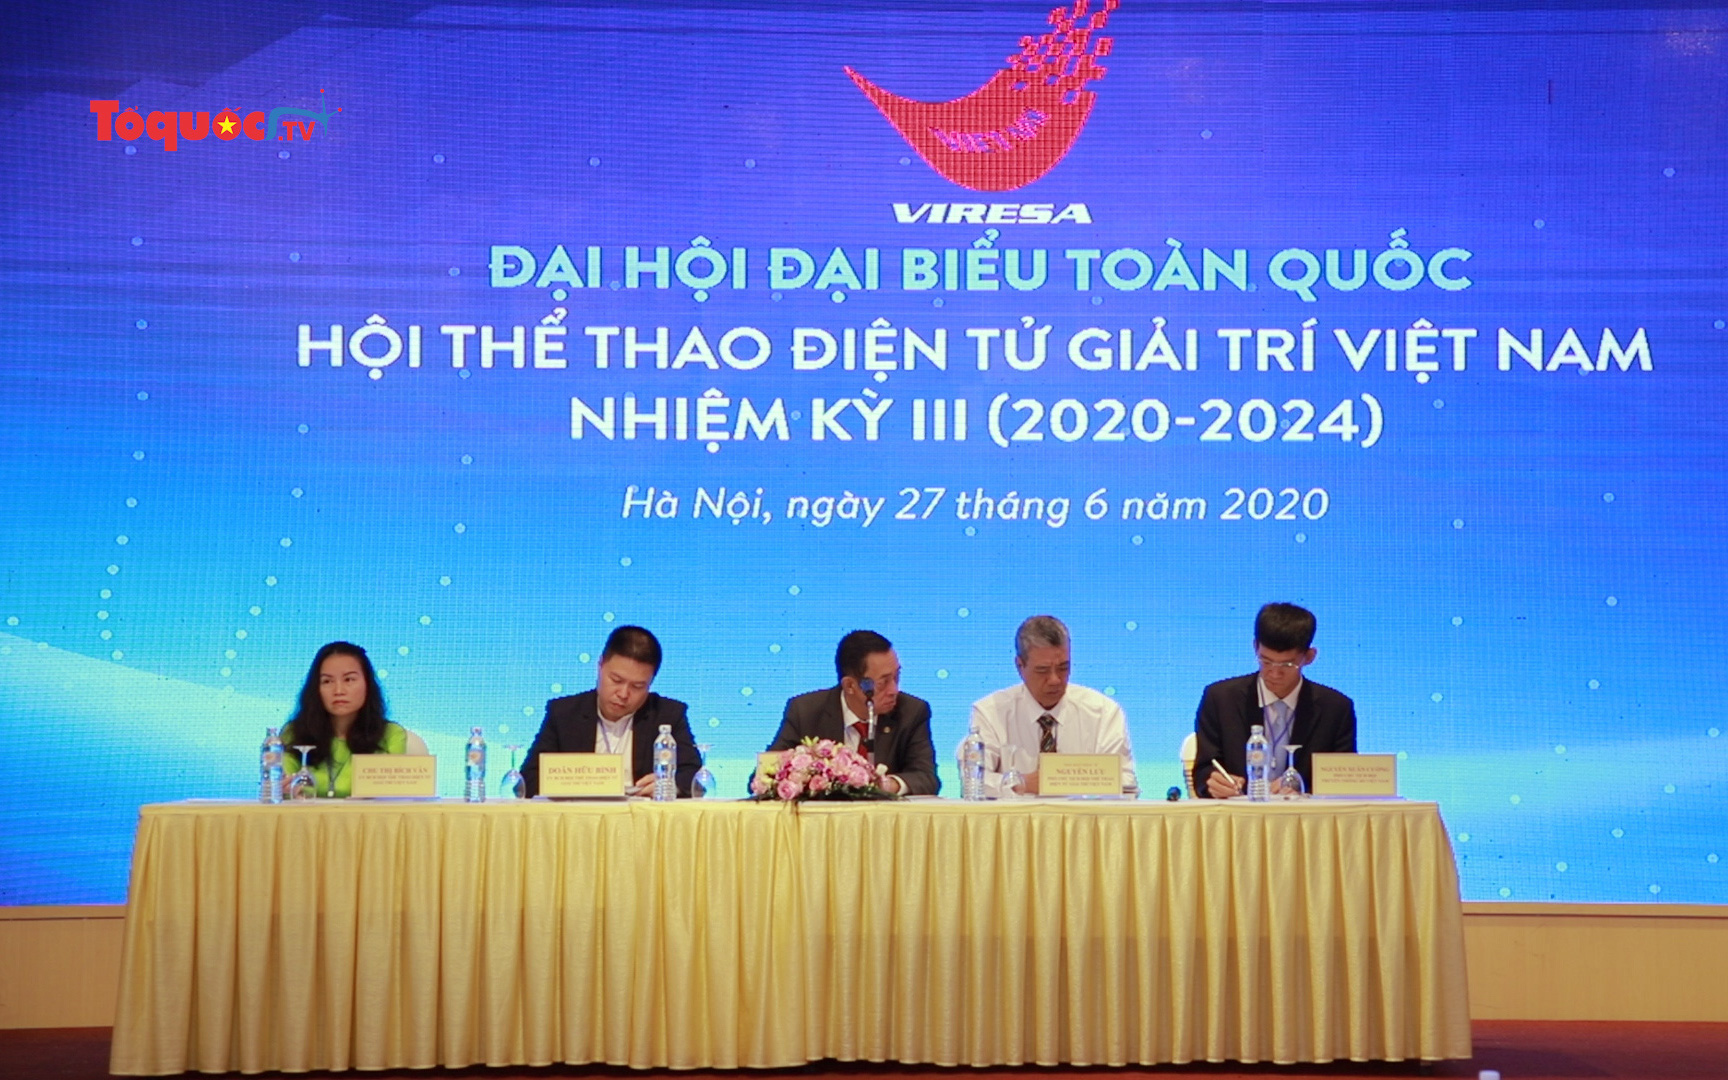 Đại hội đại biểu toàn quốc Hội thể thao điện tử giải trí Việt Nam nhiệm kỳ III (2020-2024)